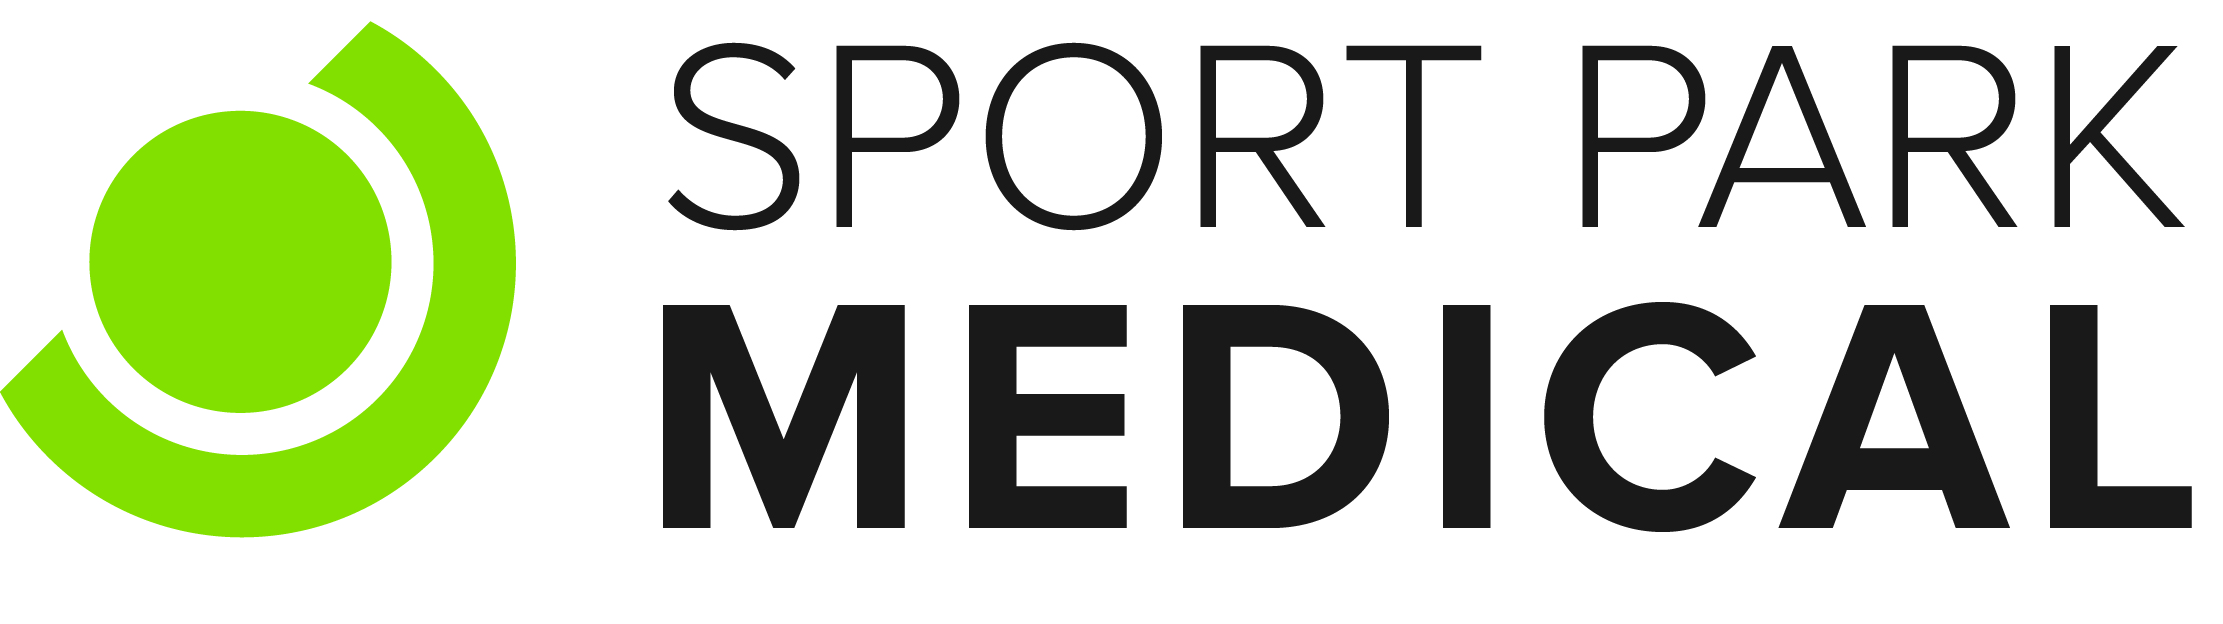 Sport Park Medical logo